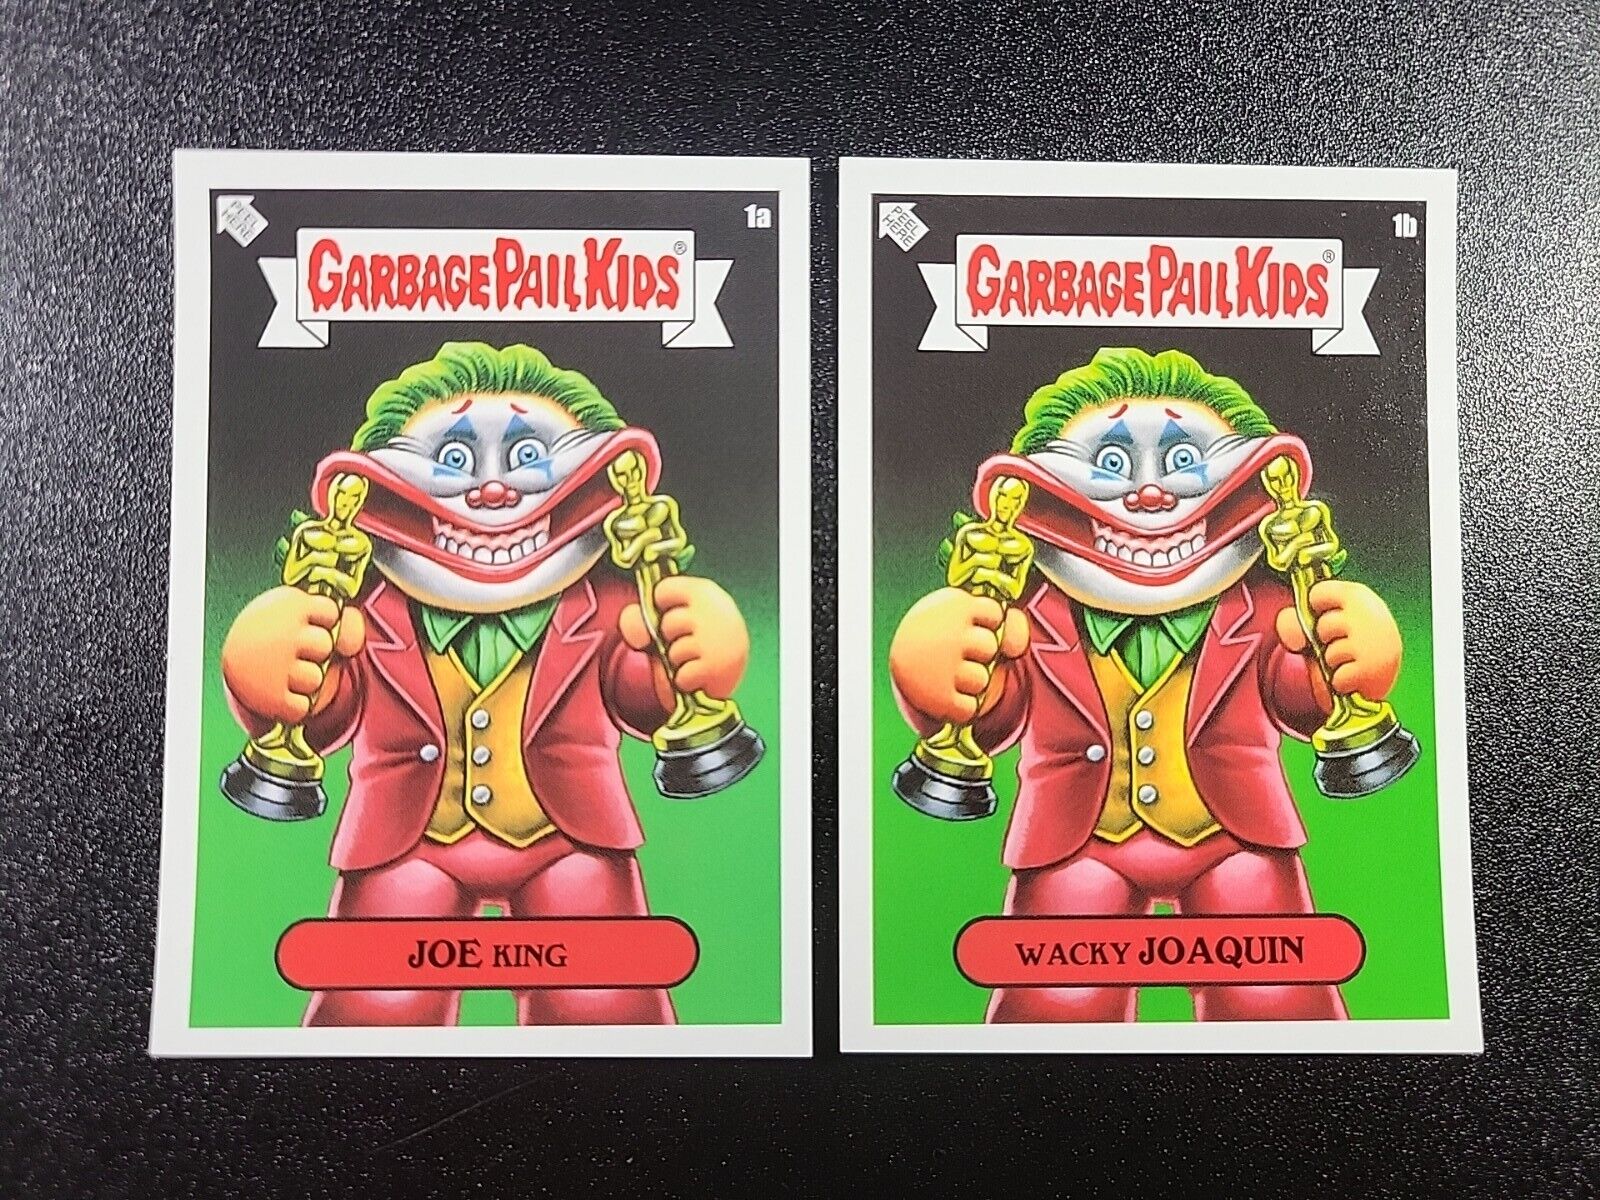 Wacky Joaquin Phoenix The Joker Batman Spoof Joe King Garbage Pail Kids Card